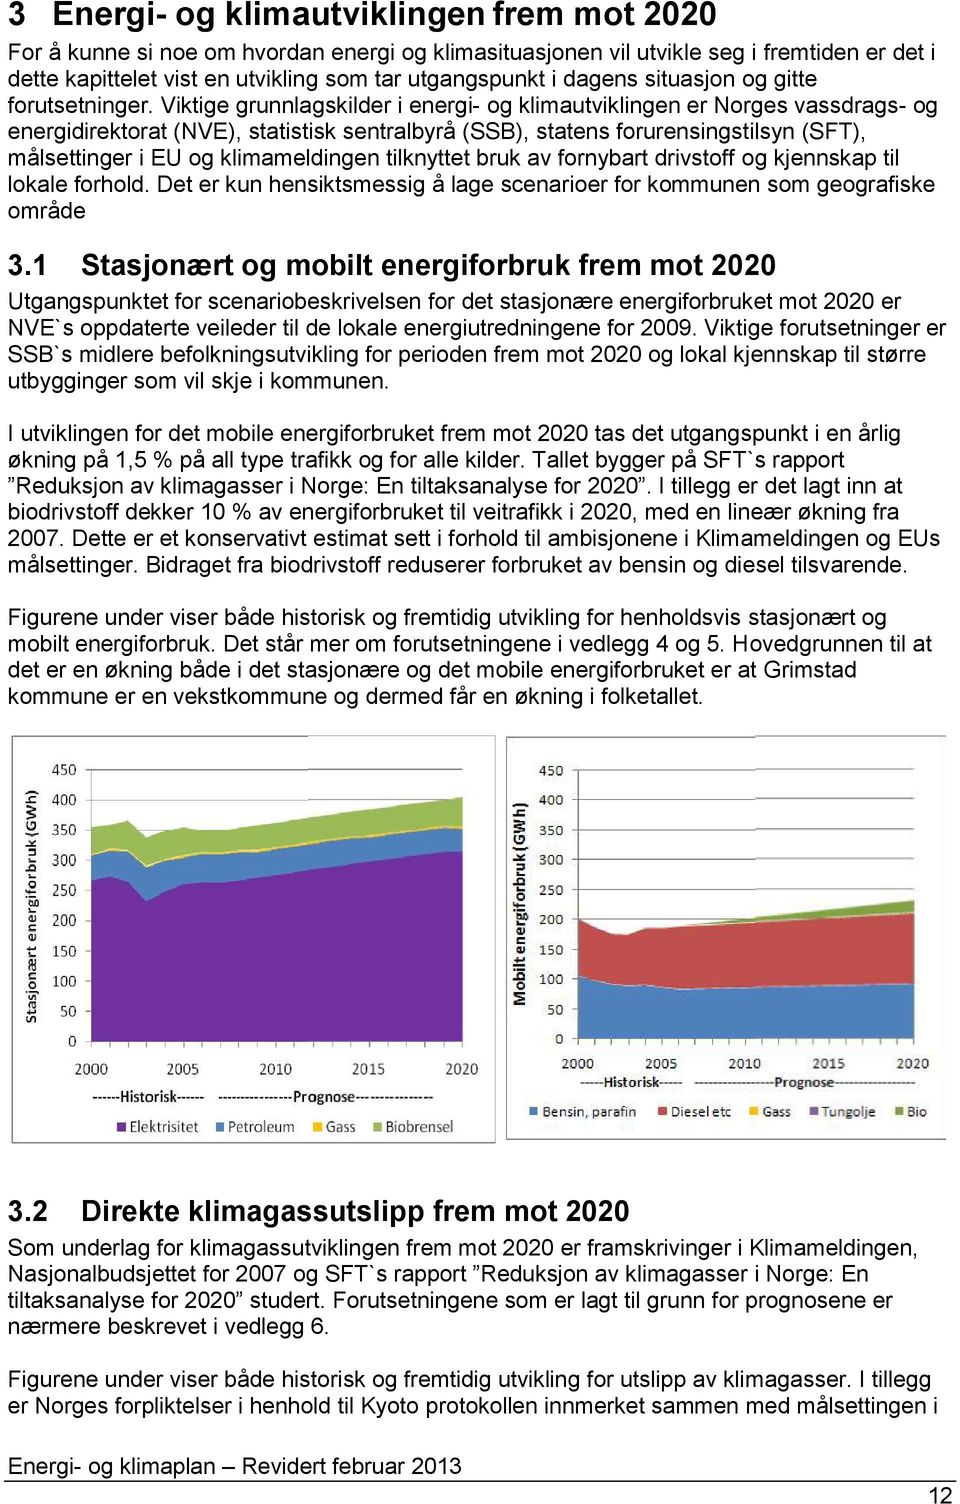 Viktige grunnlagskilder i energi- og klimautviklingen er Norges vassdrags- og energidirektorat (NVE), statistisk sentralbyrå (SSB), statens forurensingstilsyn (SFT), målsettinger i EU og